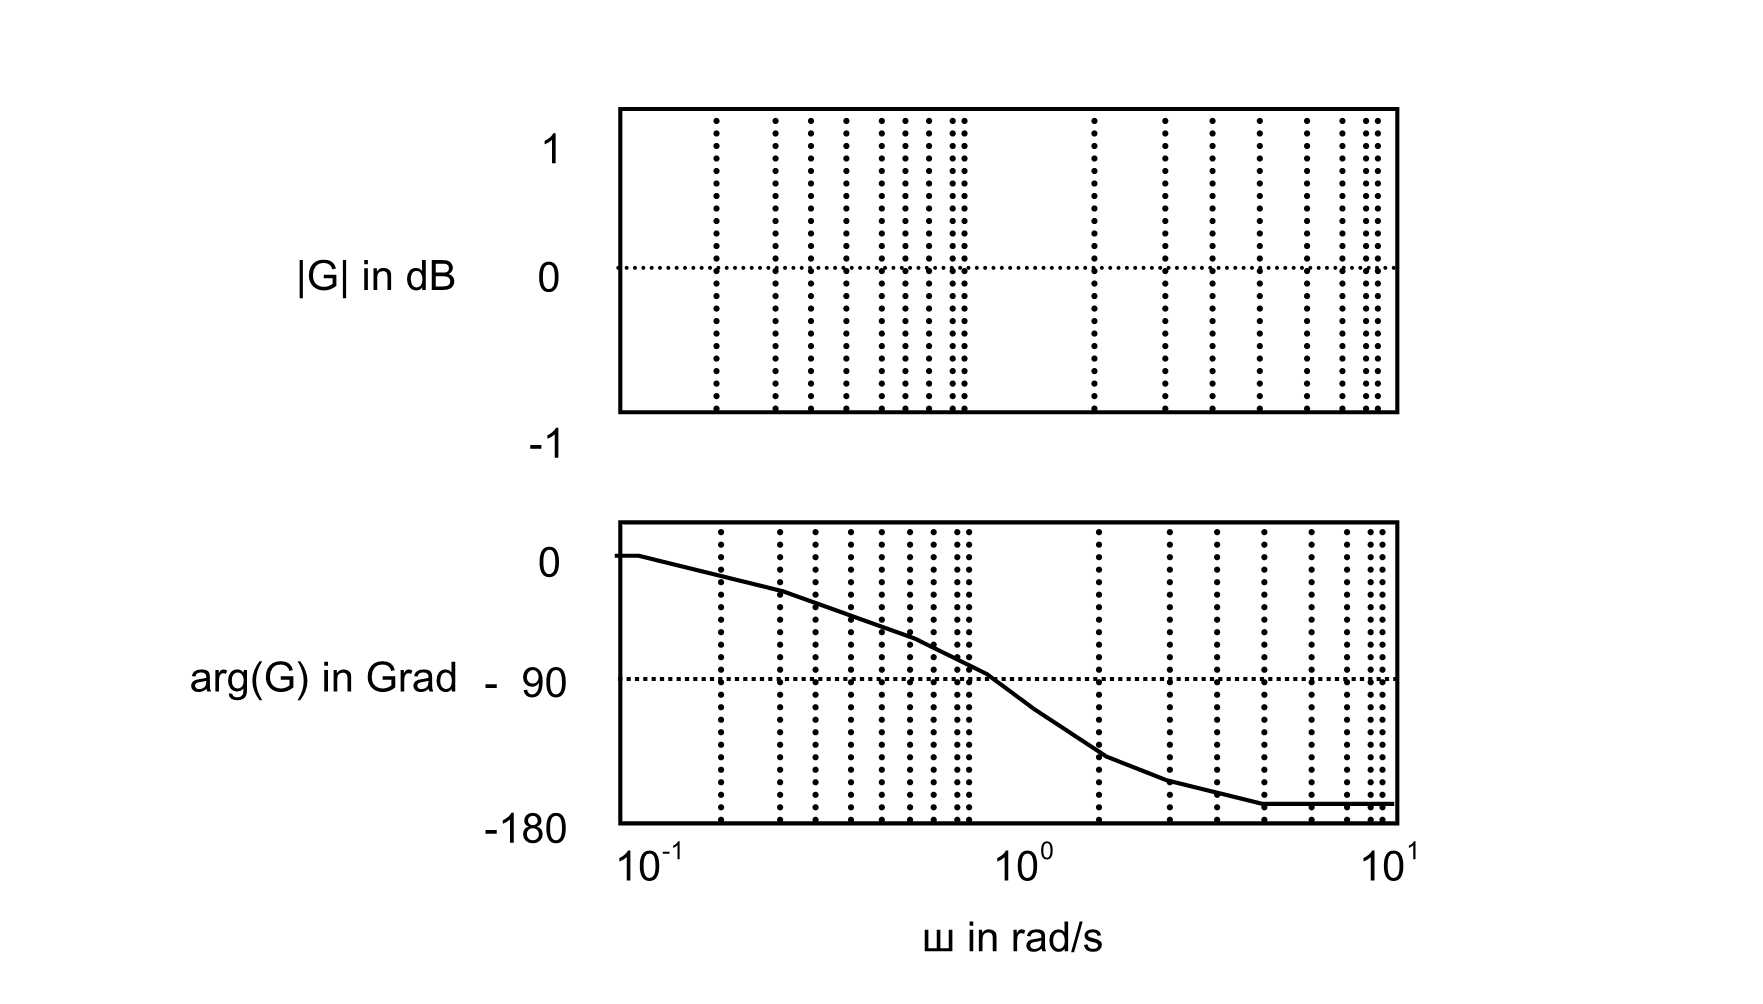 Bodediagramm eines Allpassfilters